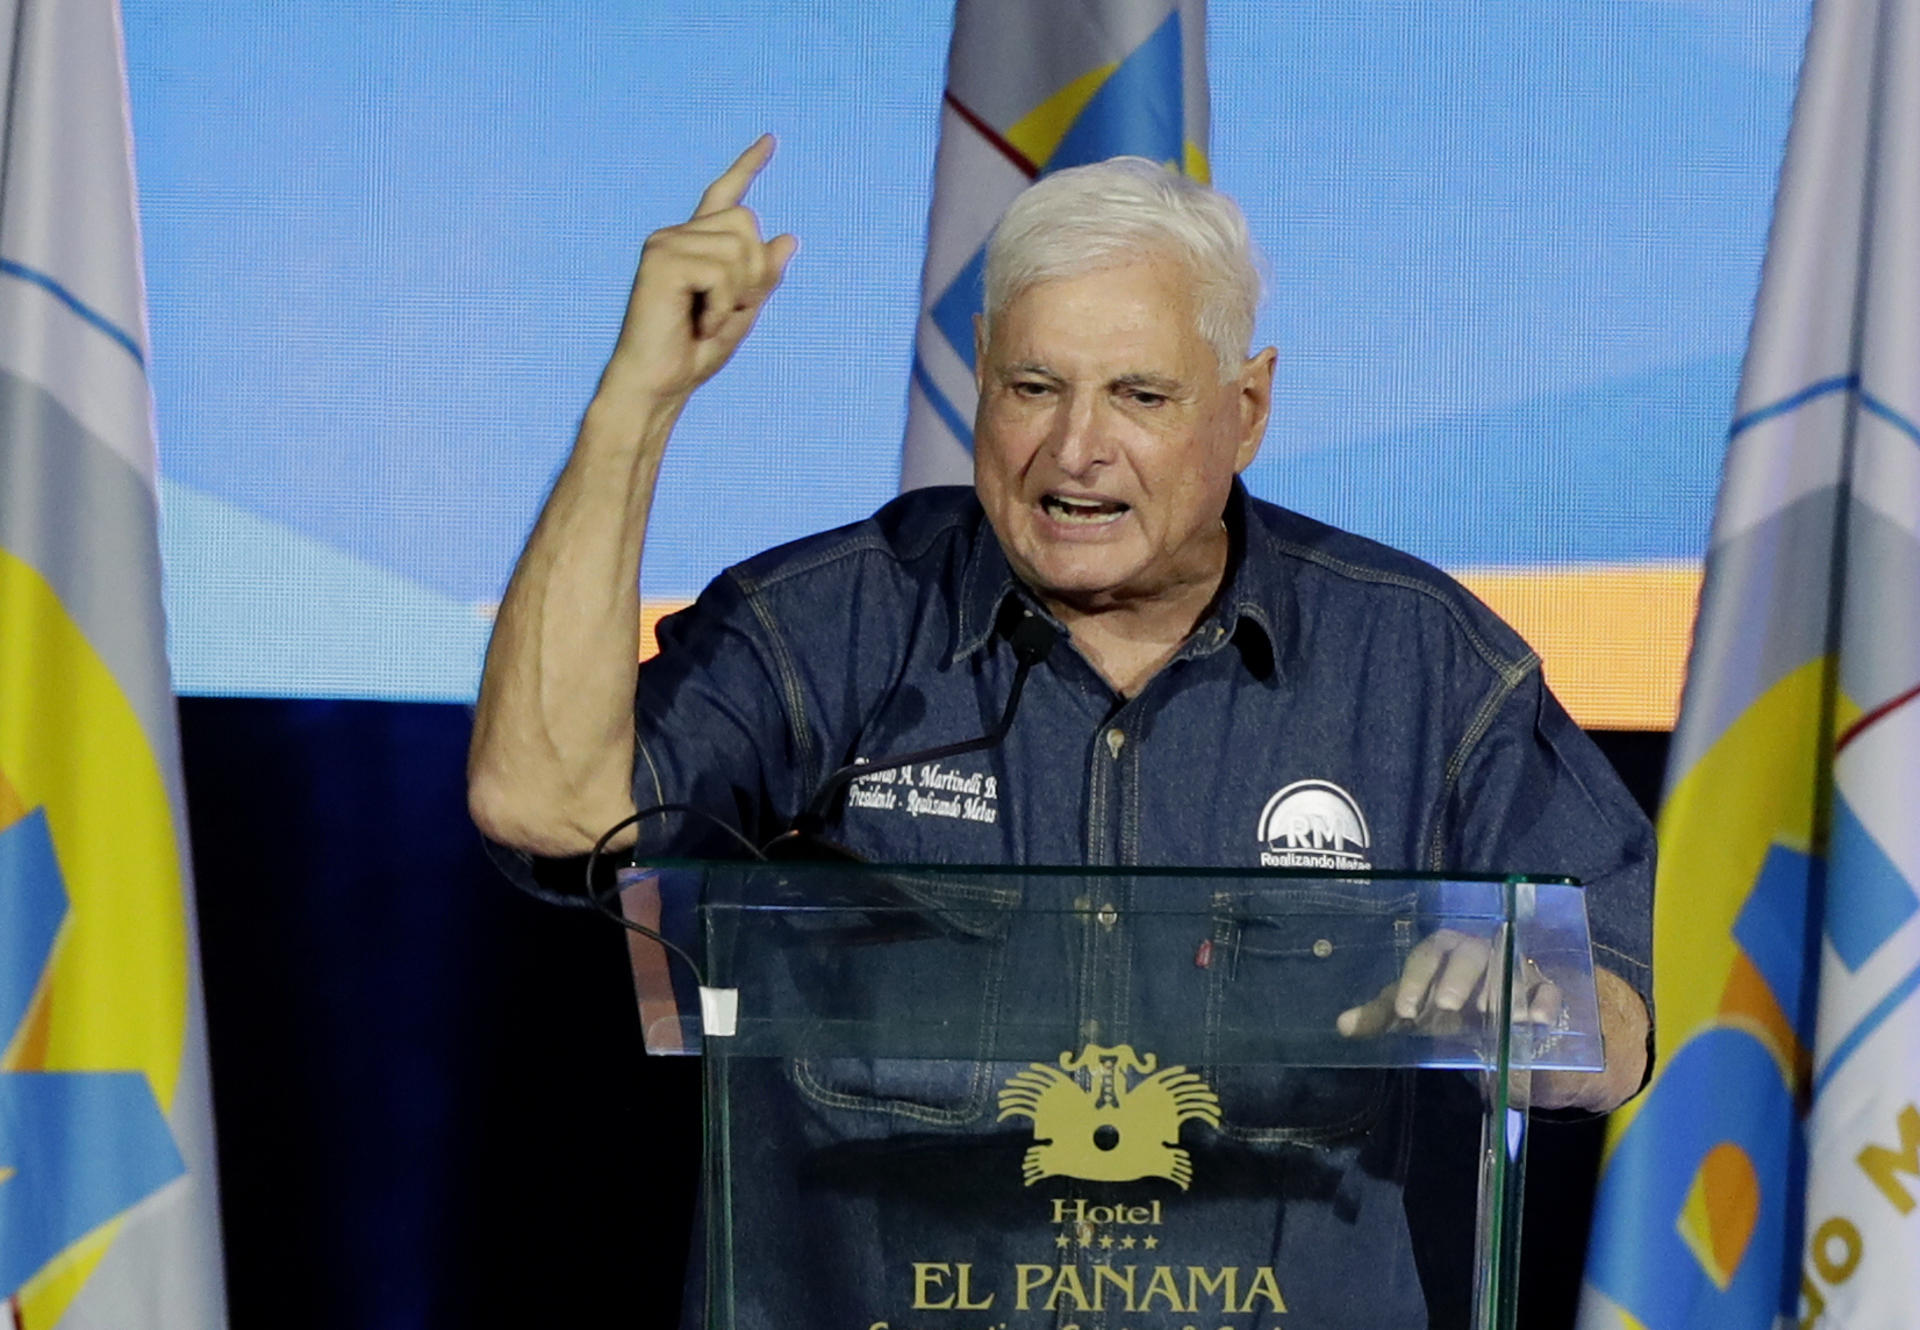 La inhabilitación del expresidente Martinelli trunca su deseo de volver al poder en Panamá